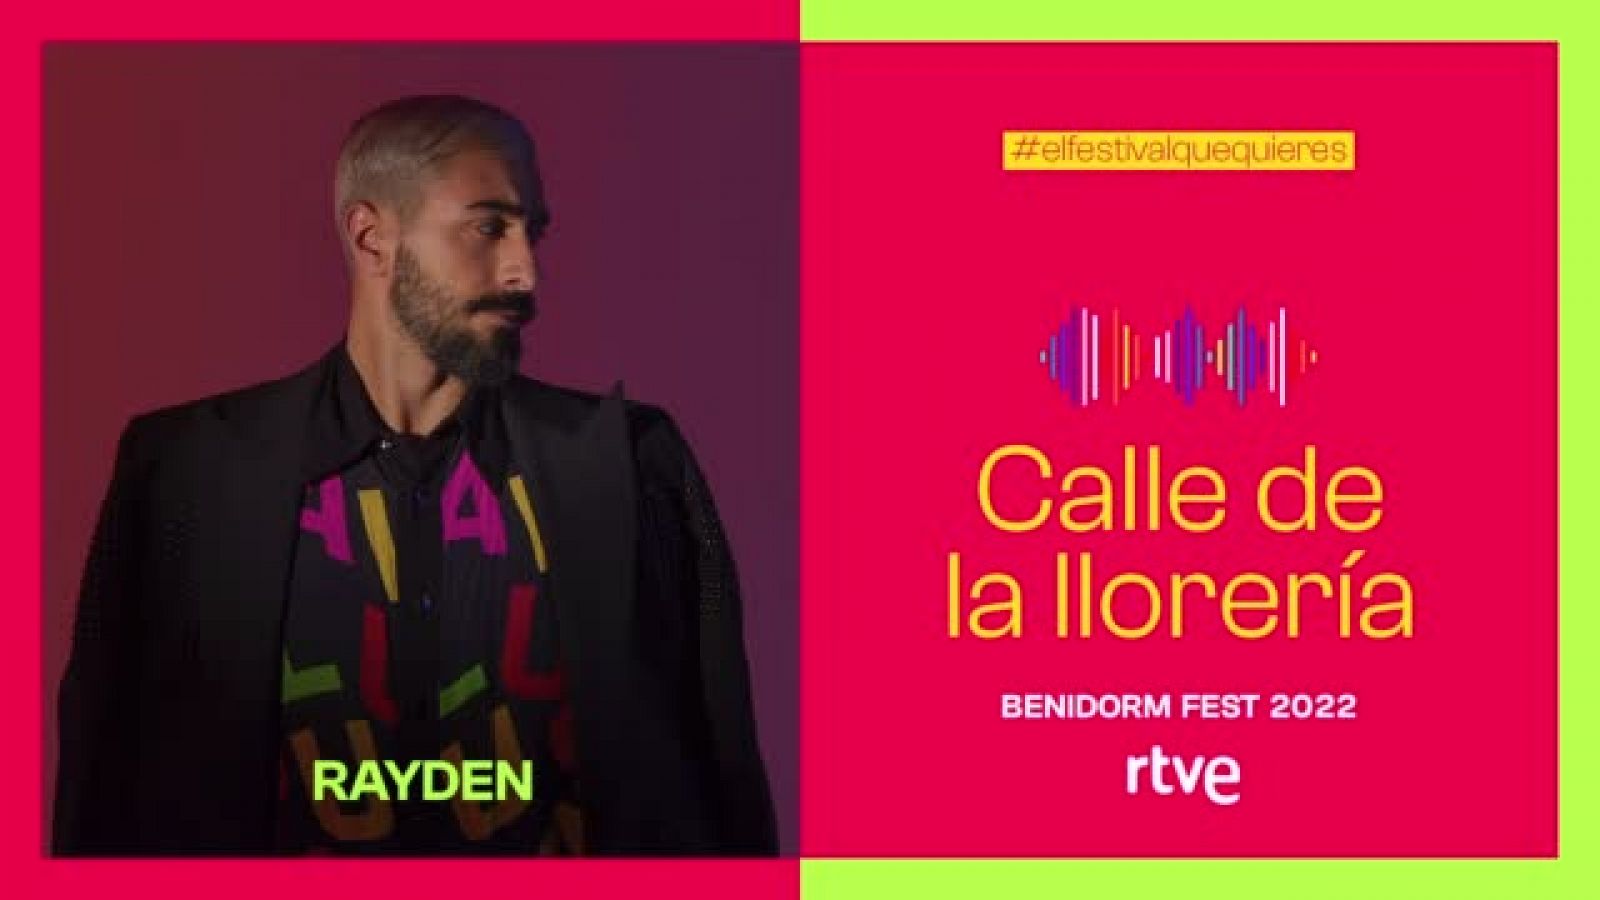 Benidorm Fest: Rayden interpreta "Calle de la llorería"